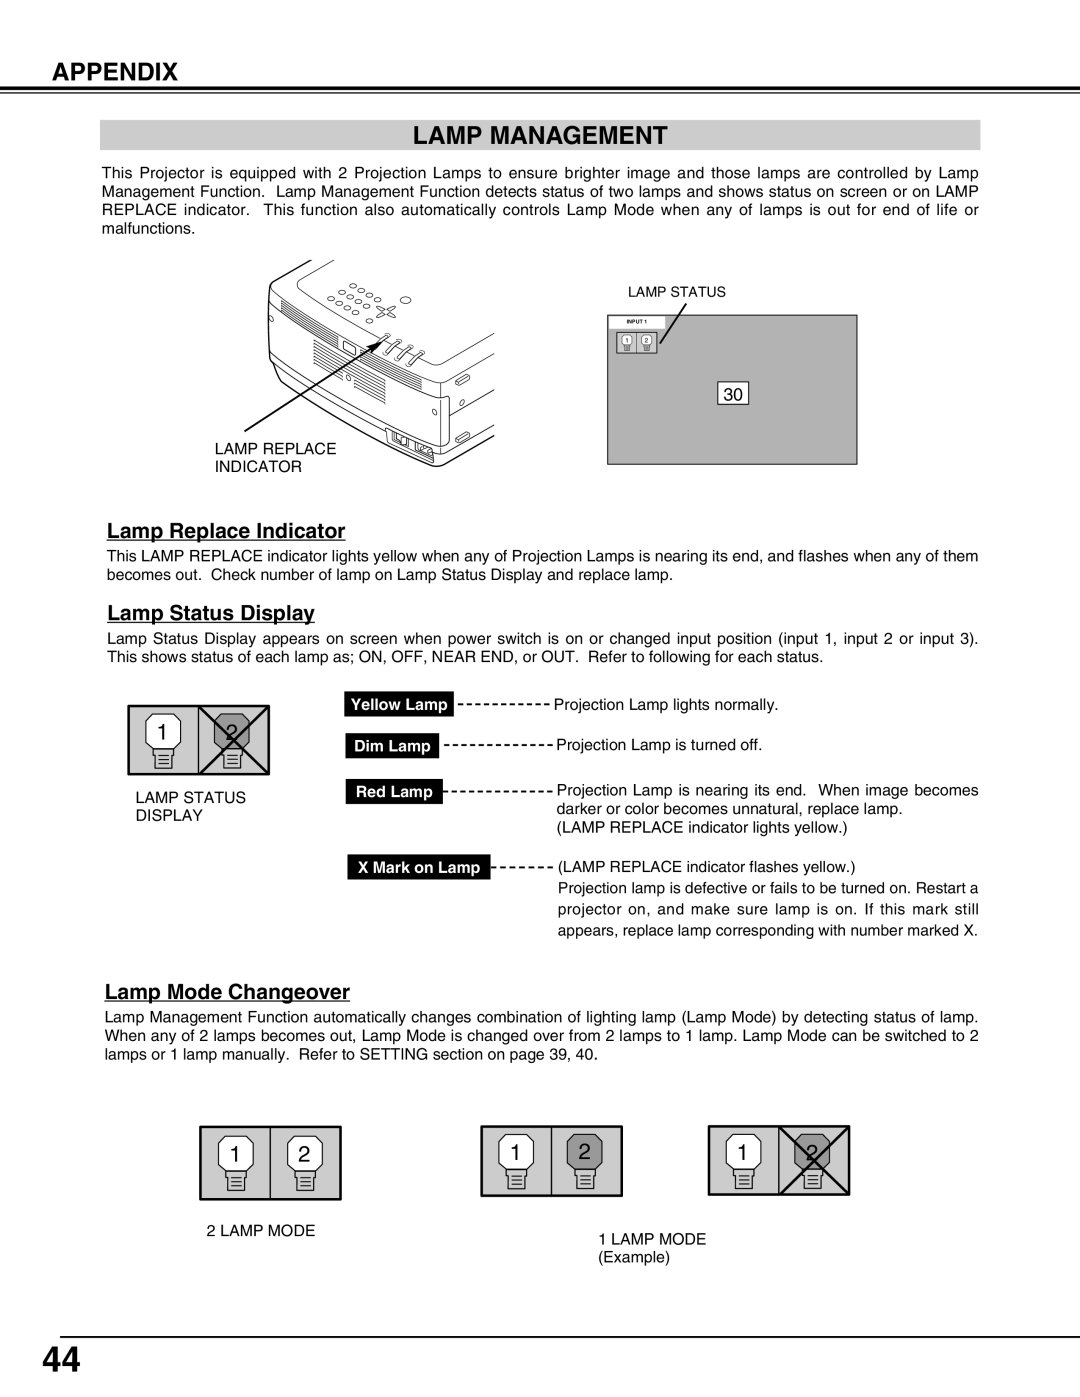 Christie Digital Systems 38-MX2001-01 user manual Appendix Lamp Management, Lamp Replace Indicator, Lamp Status Display 